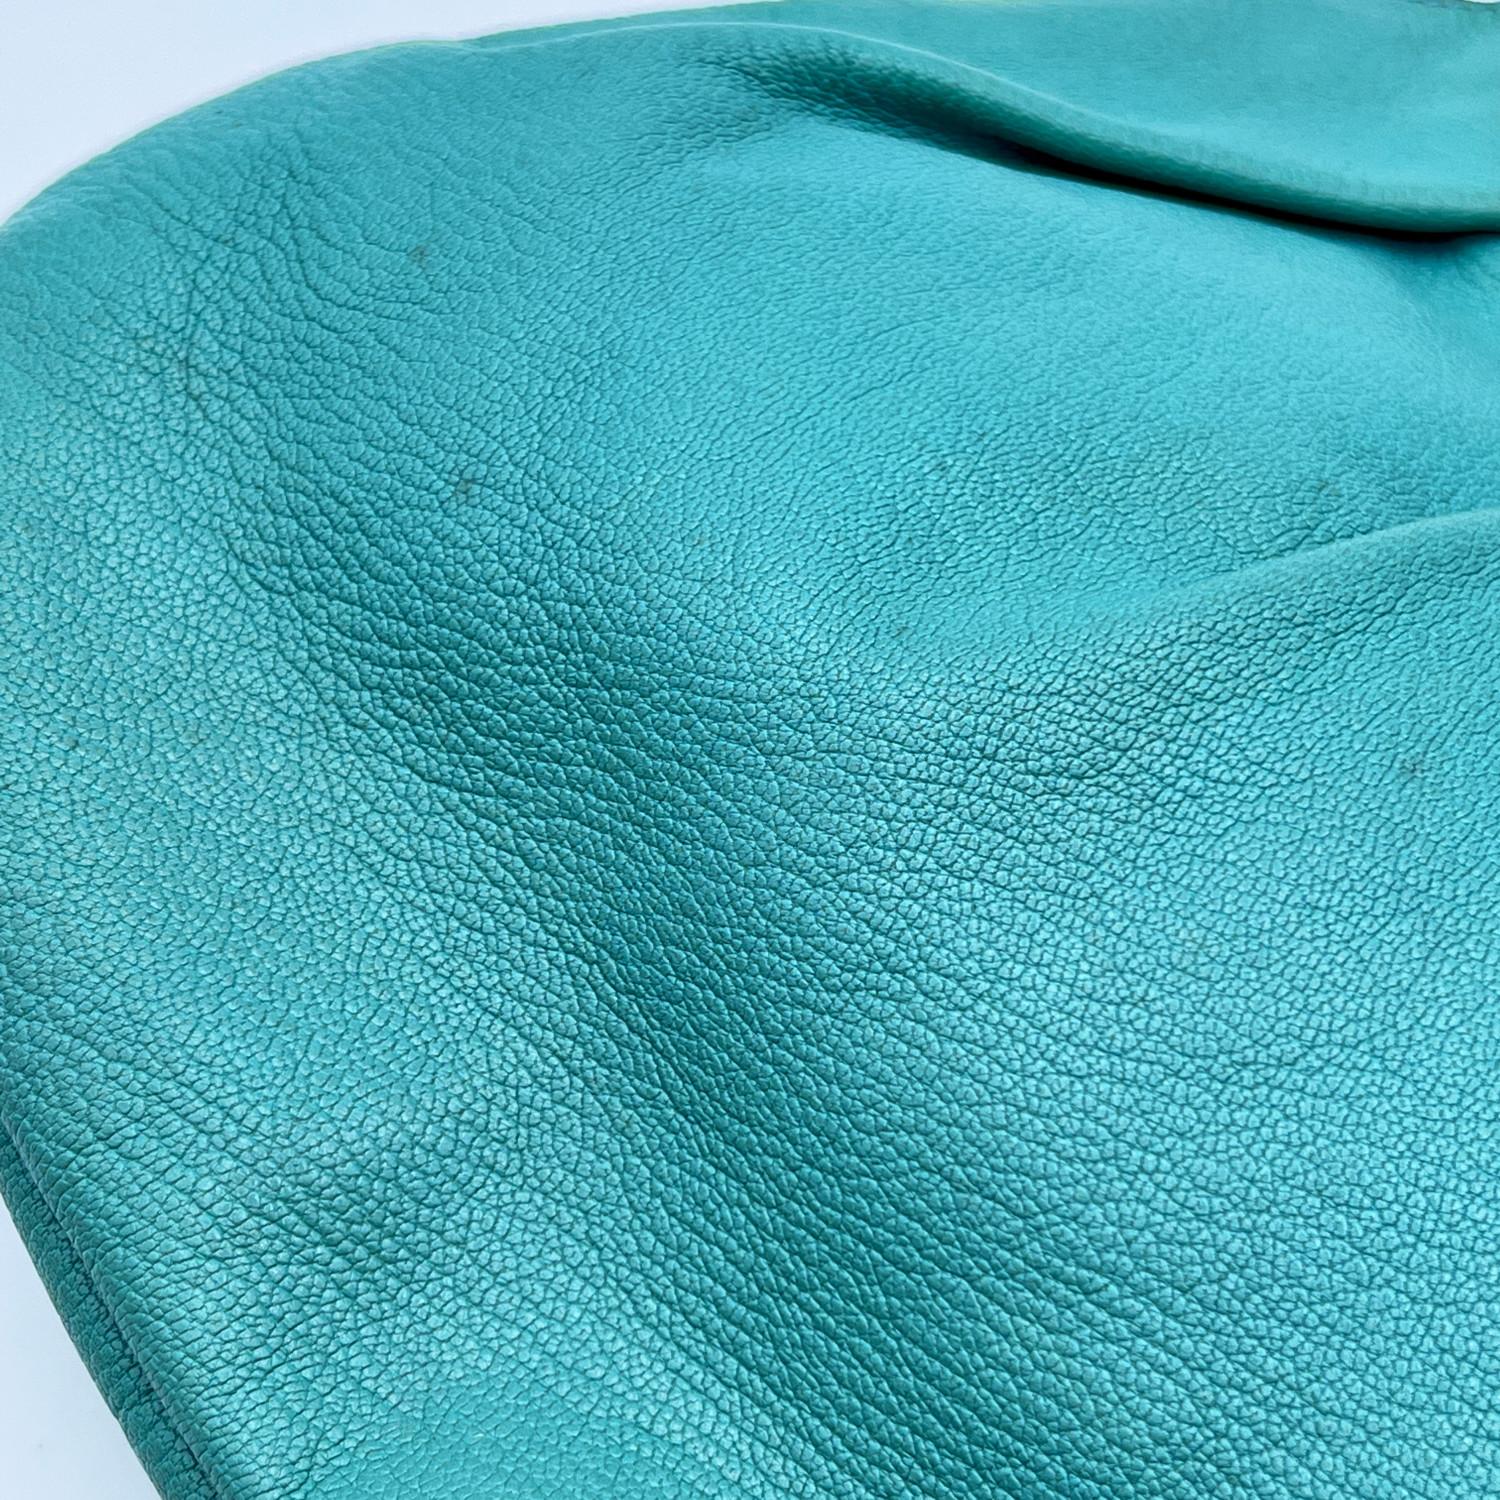 Gucci Turquoise Leather Bamboo Studded Handbag Hobo Bag For Sale 5